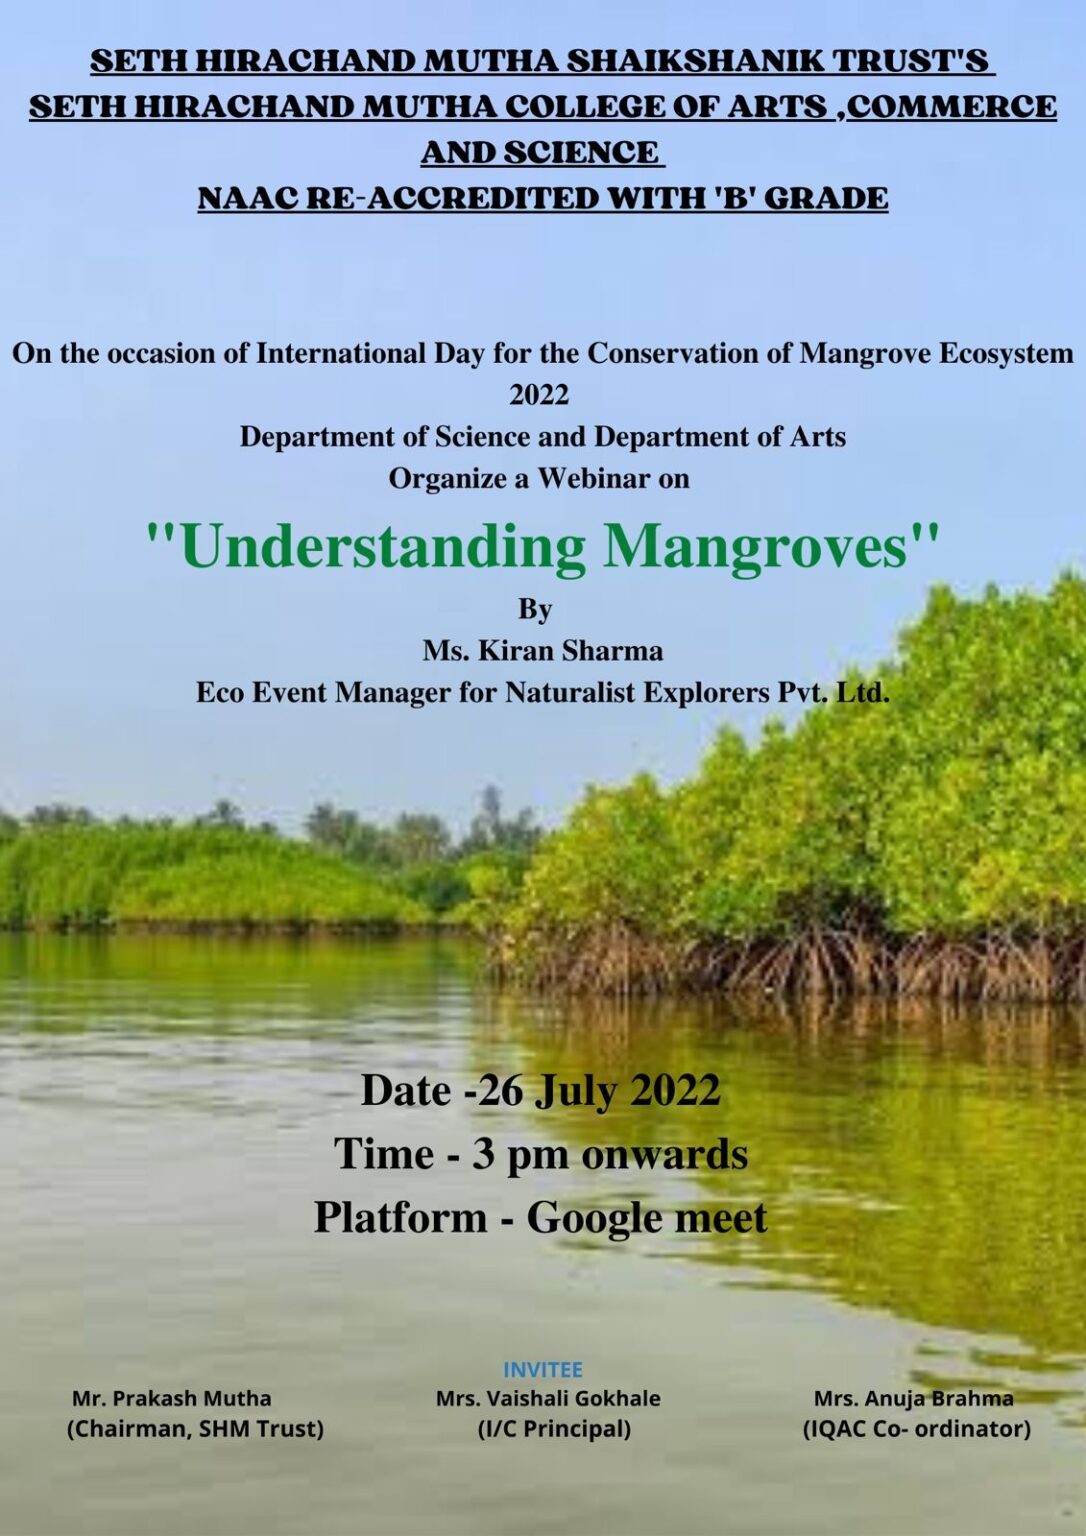 Webinar on "Understanding Mangroves " was conducted on 26/07/2022